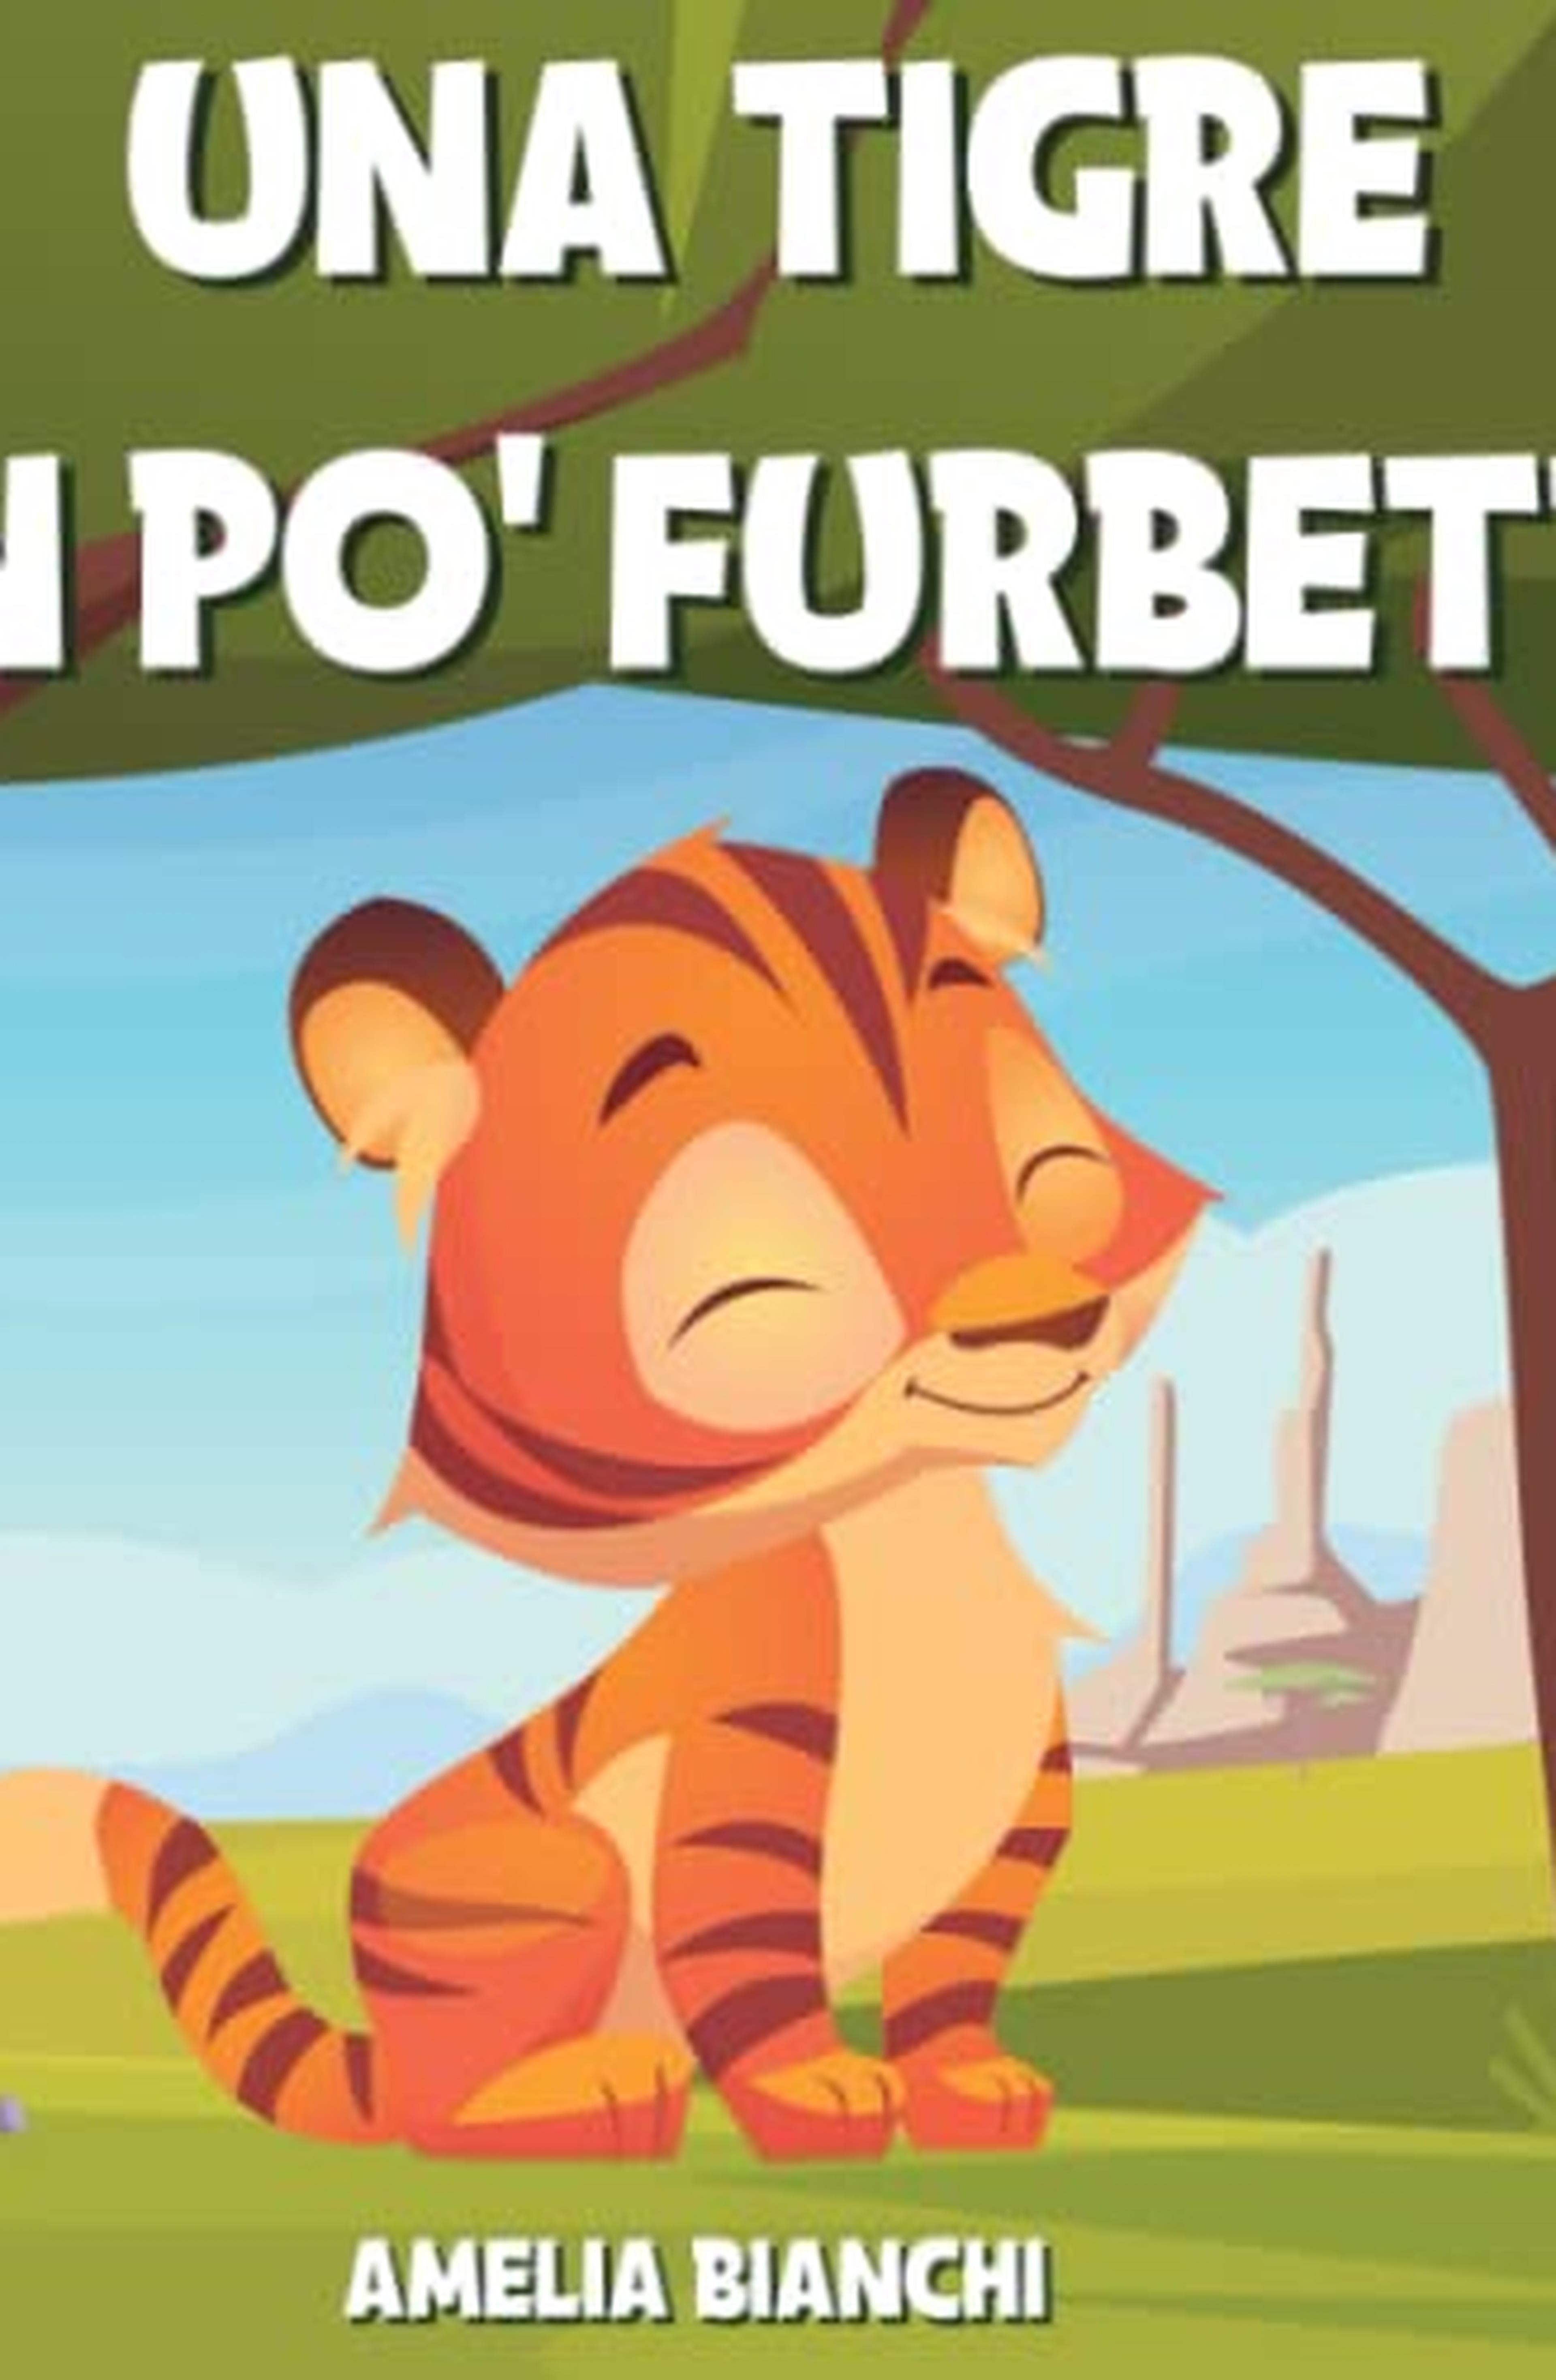 Una tigre un po’ furbetta: Favola illustrata per bambini. Una storia divertente ed educativa